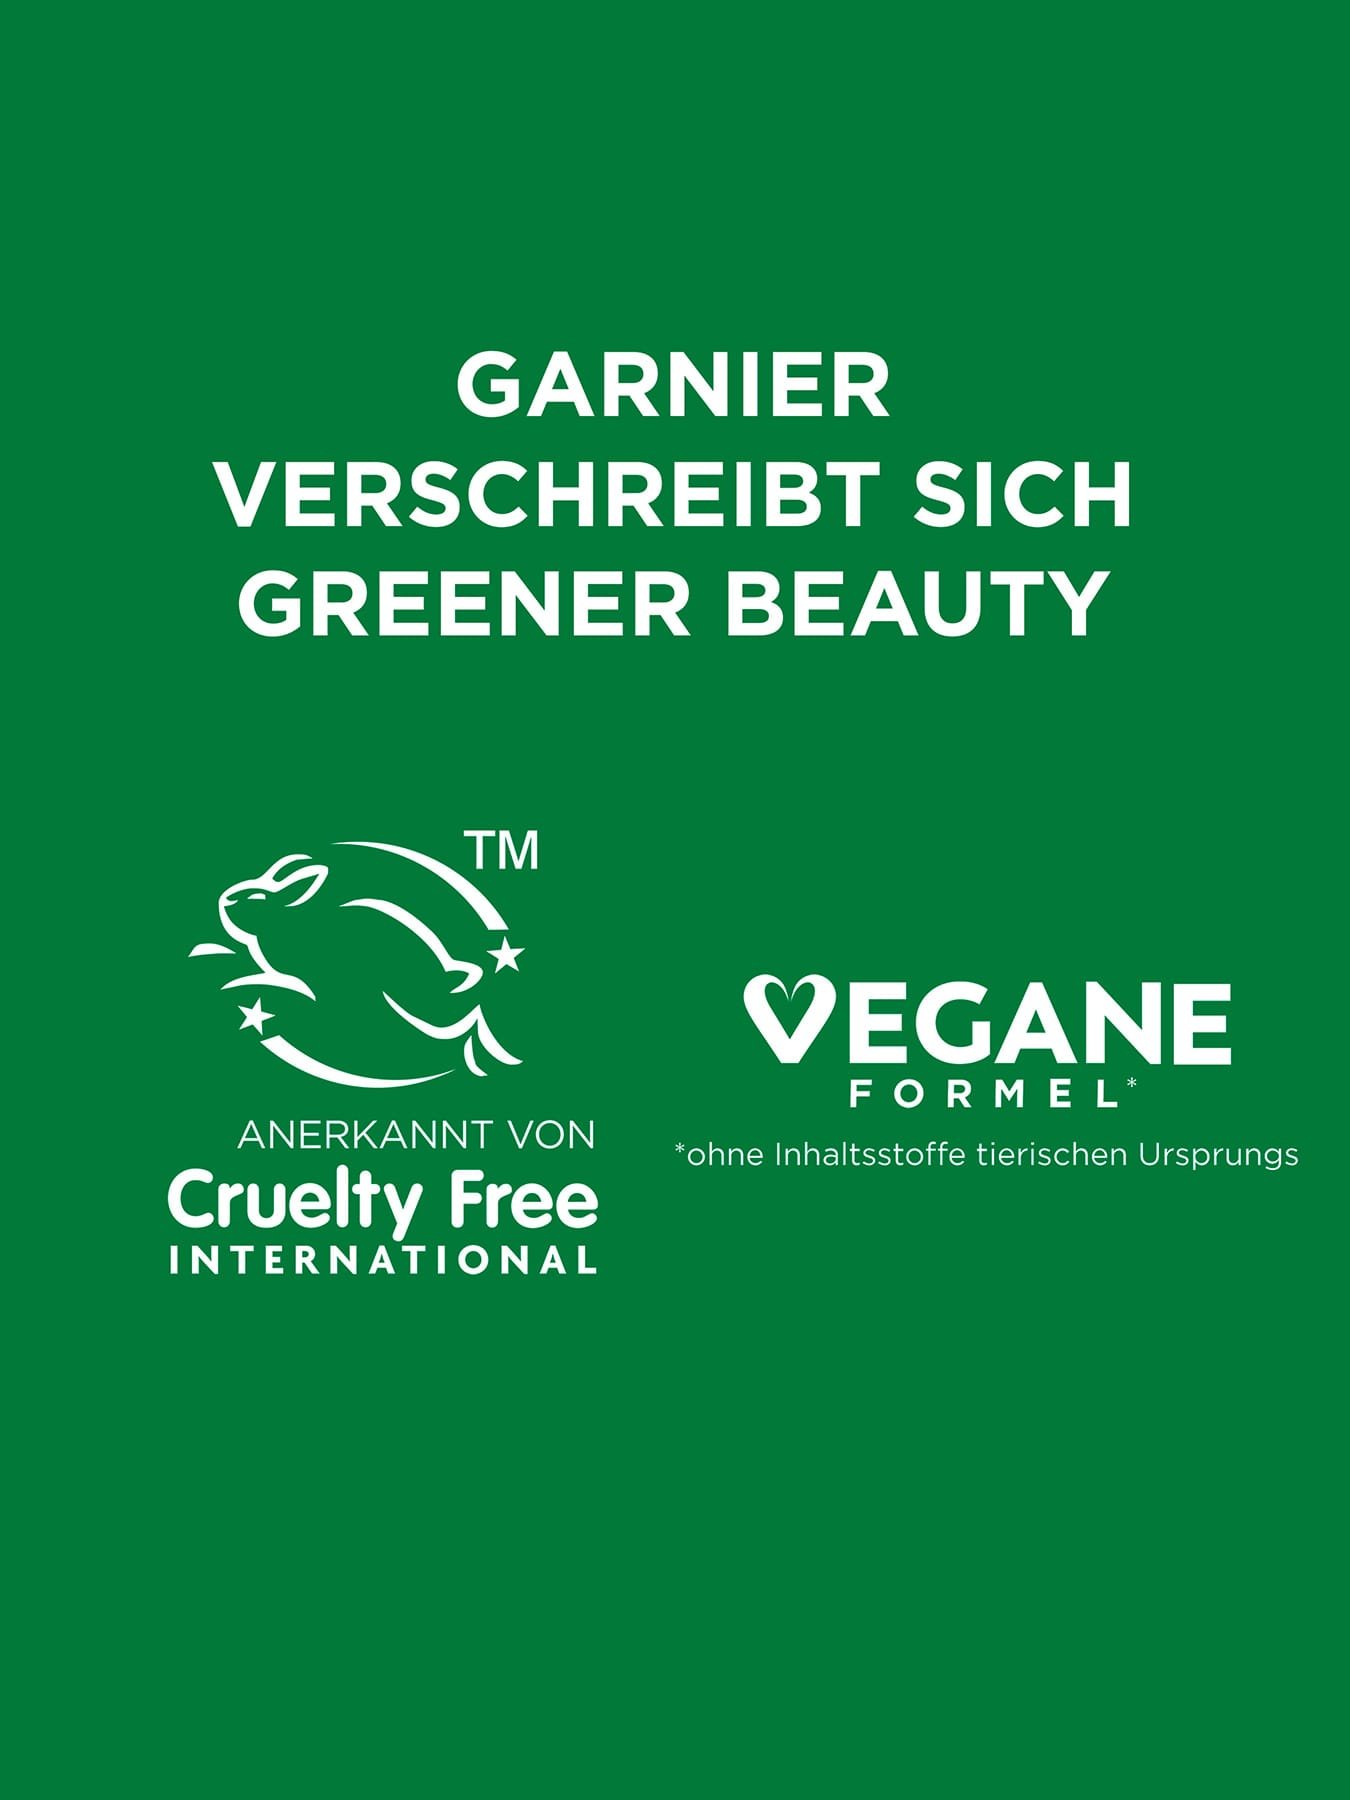 Garnier verschreibt sich Green Beauty, Cruelty Free International / VEGANE Formeln Logos - auf grünem Hintergrund